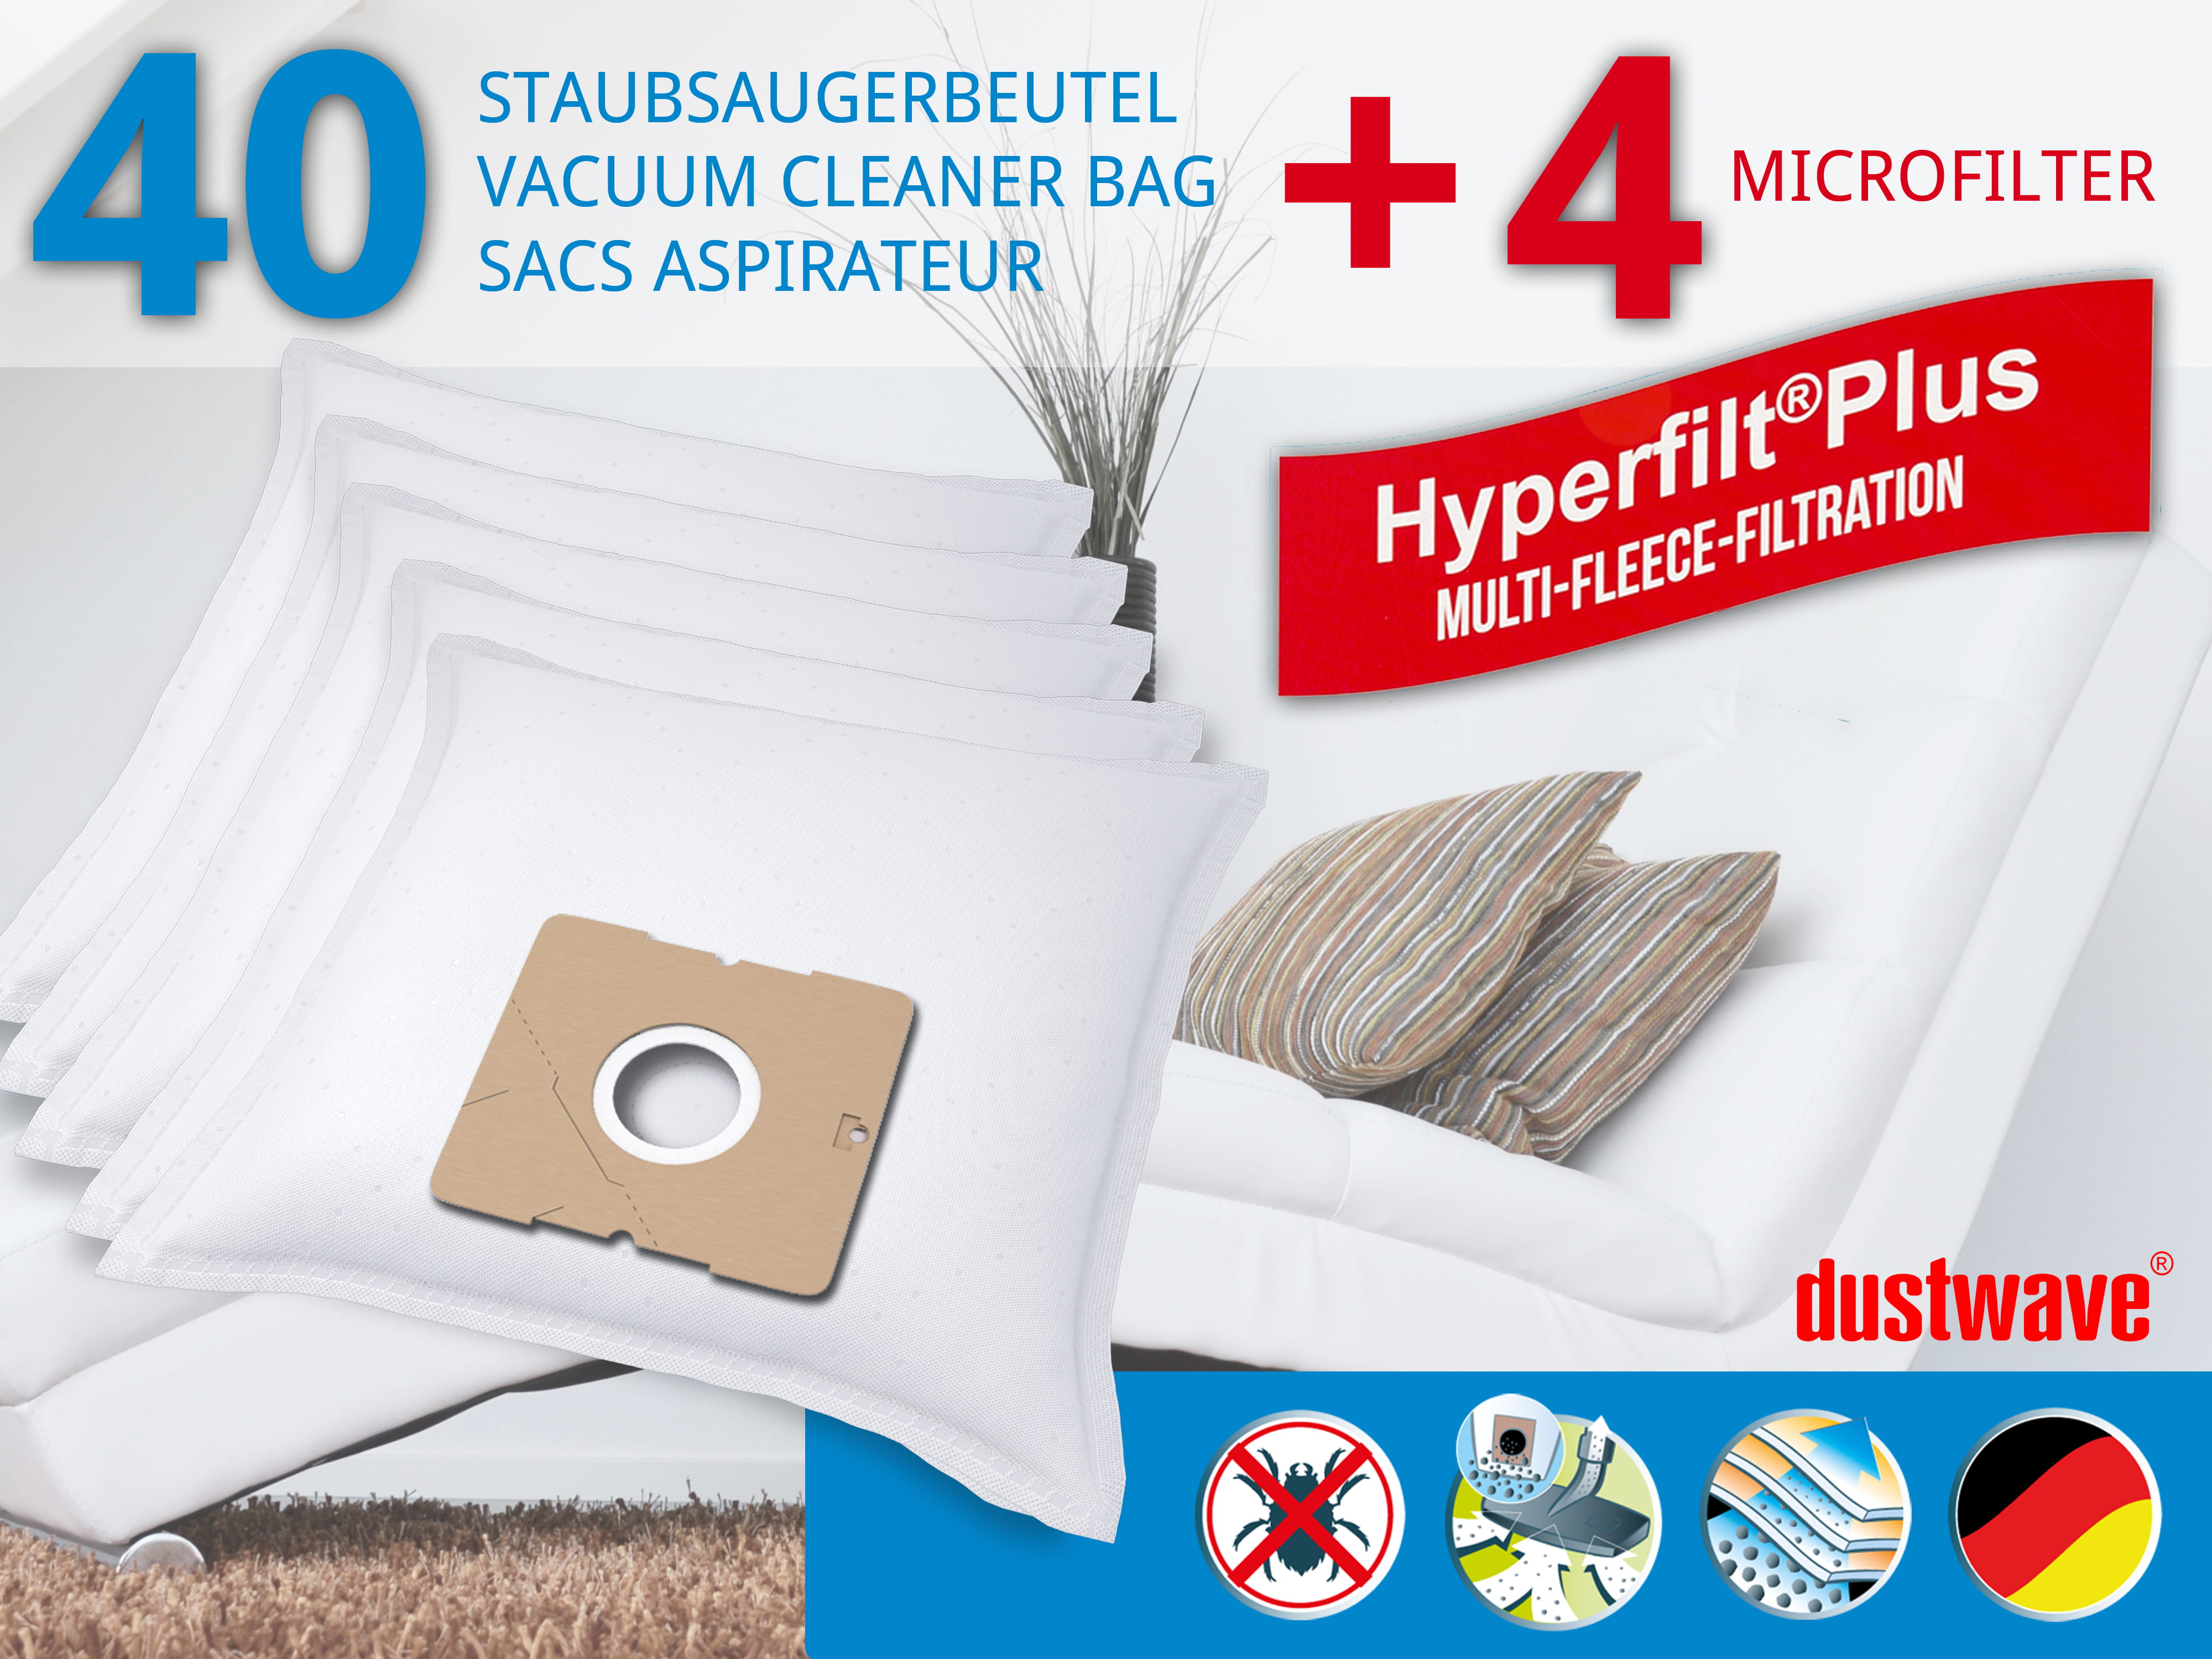 Dustwave® 40 Staubsaugerbeutel für AEG GR50 / Größe 50 - hocheffizient, mehrlagiges Mikrovlies mit Hygieneverschluss - Made in Germany